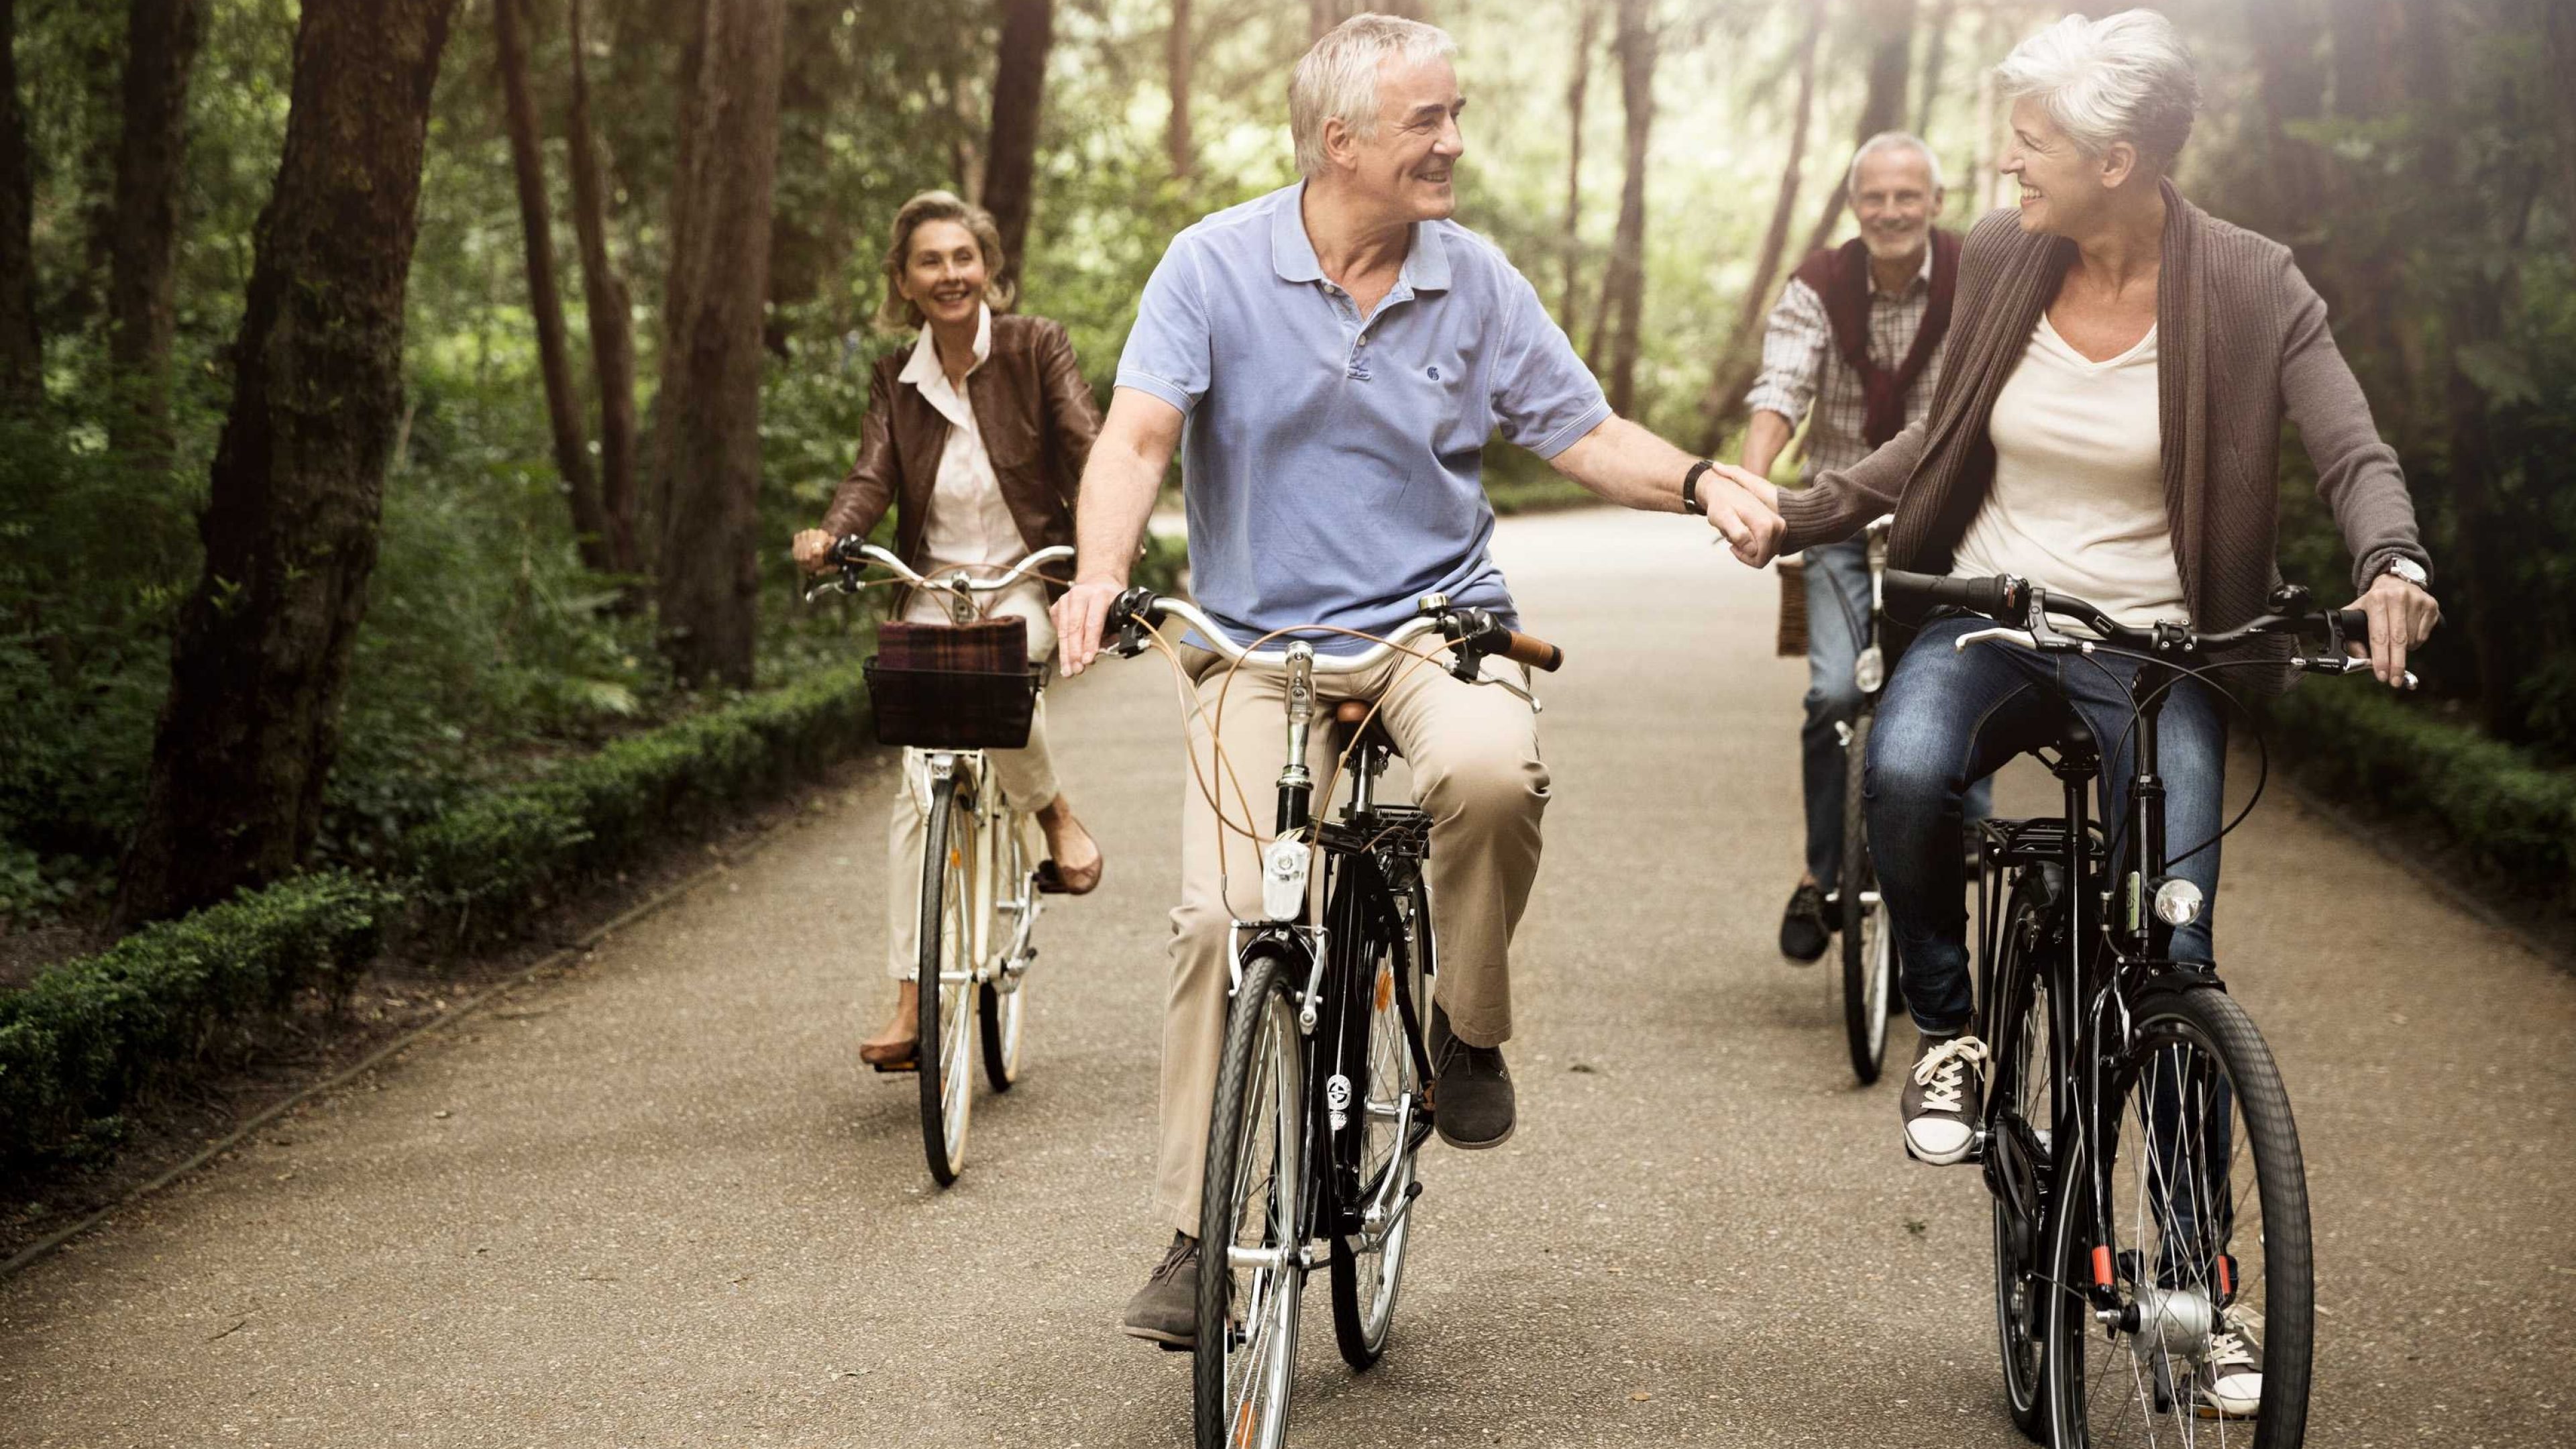 Zwei Seniorenpaare unternehmen einen Ausflug mit dem Fahrrad